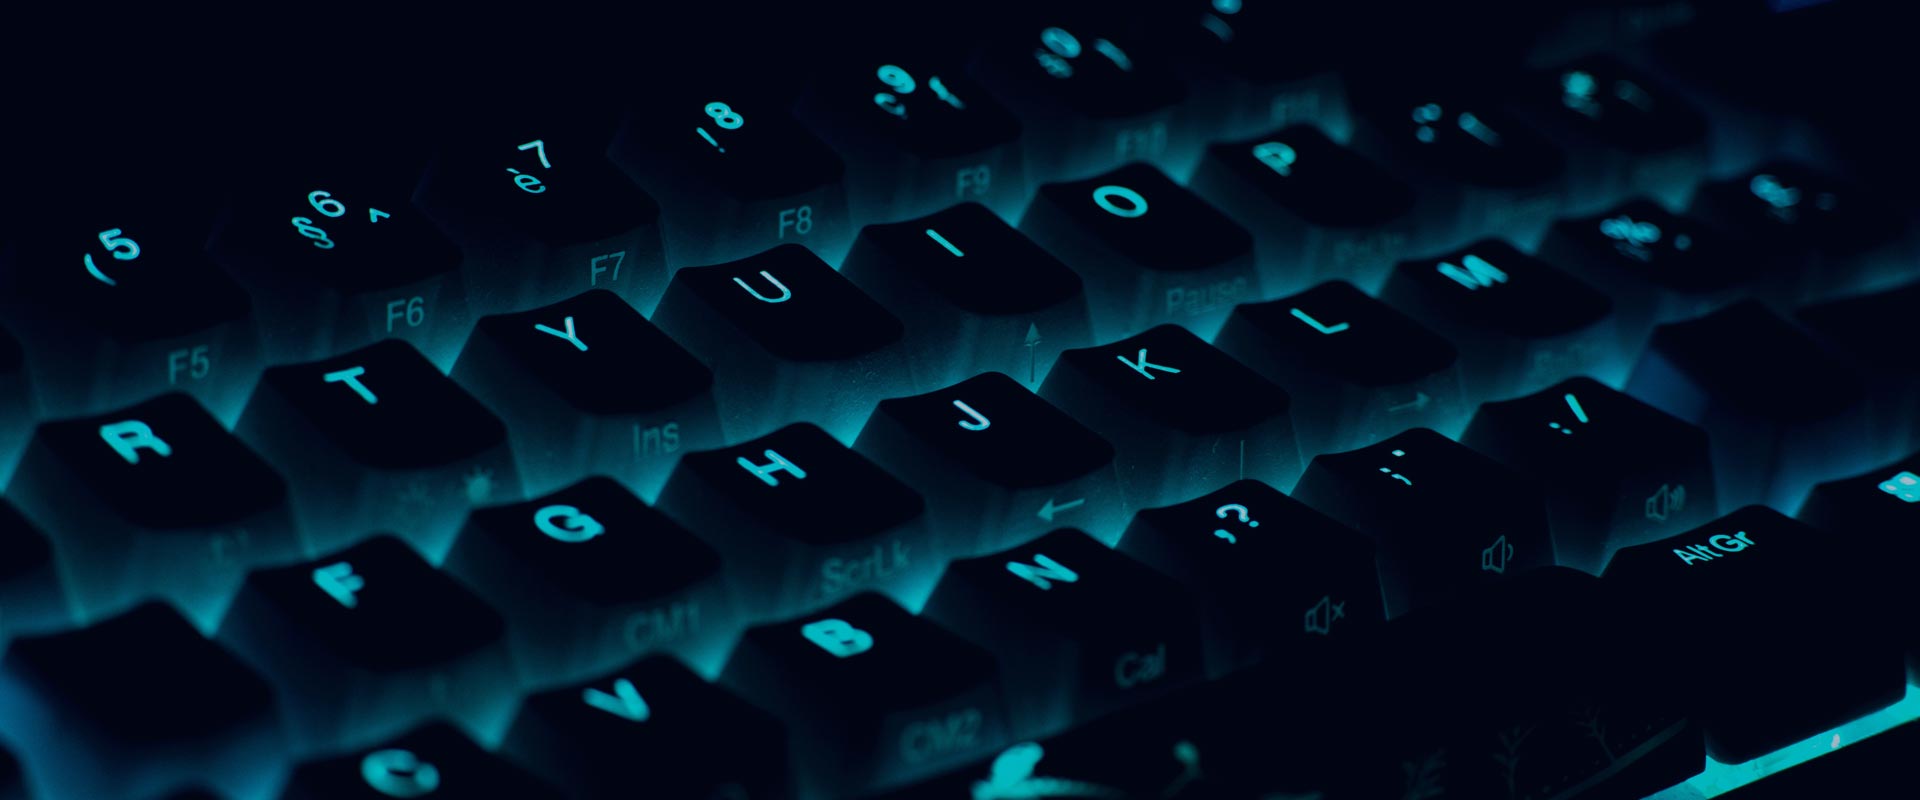 backlit computer keyboard